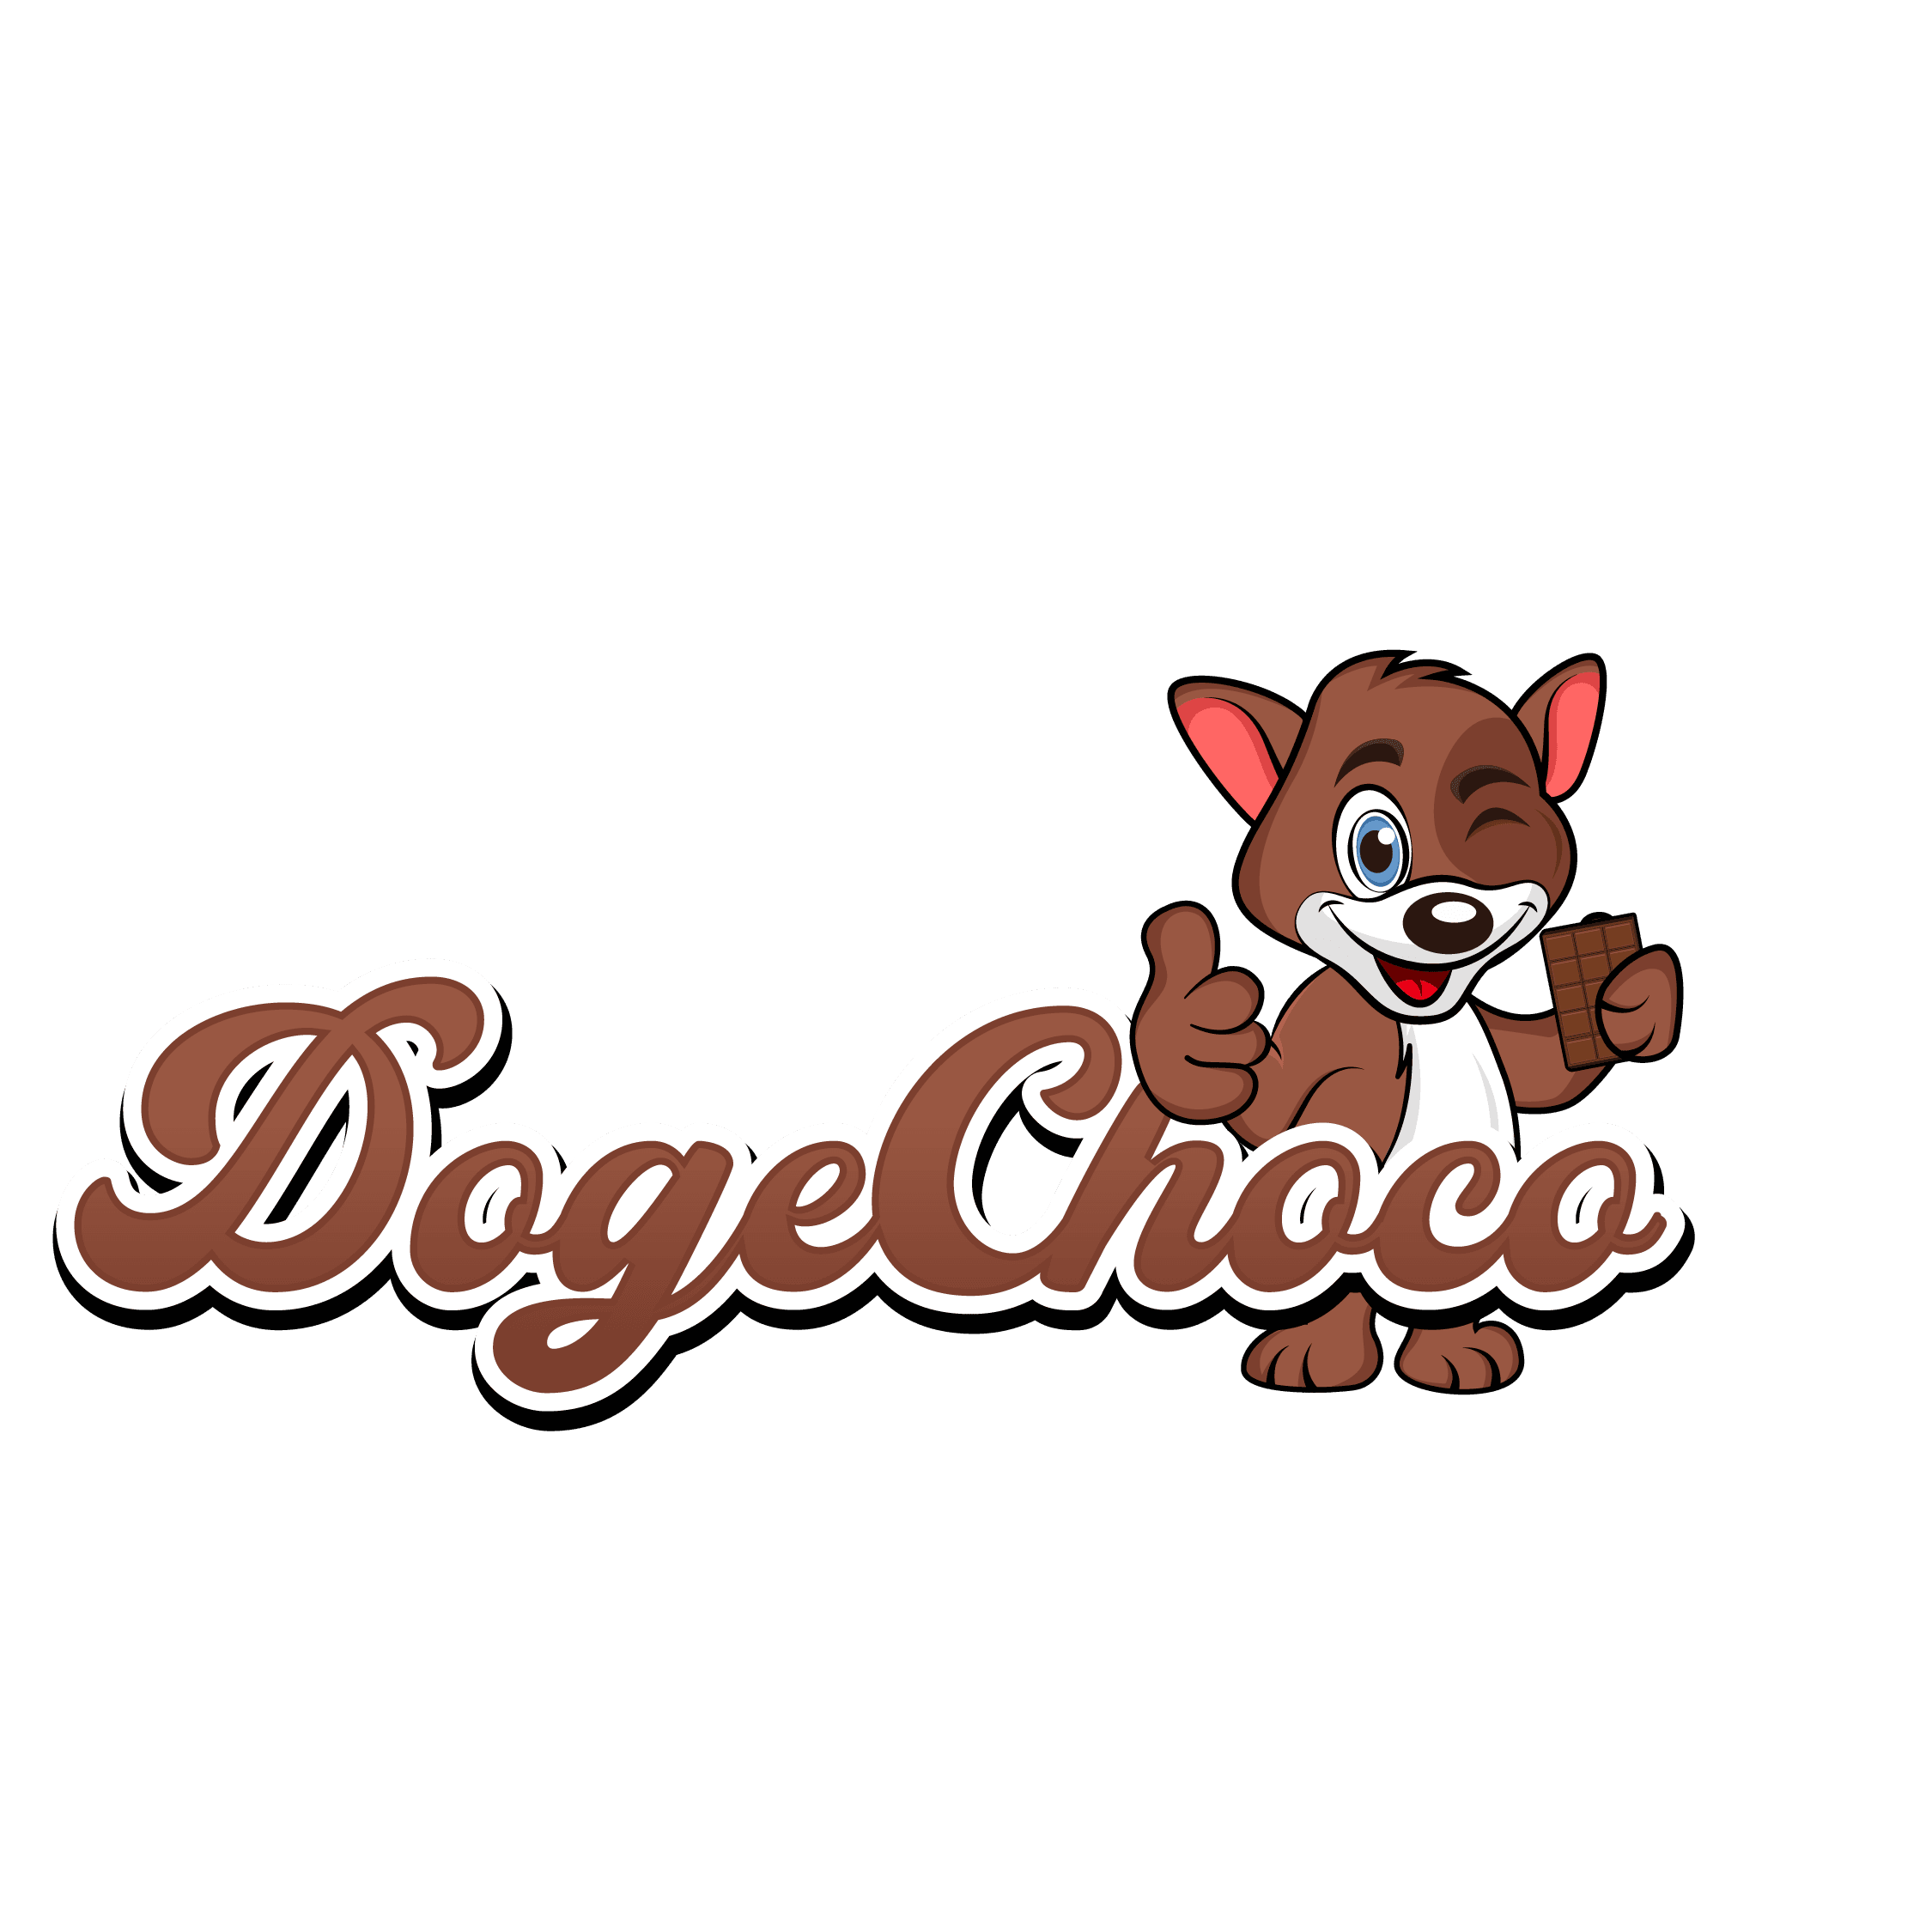 Dogechoco Fundation #4